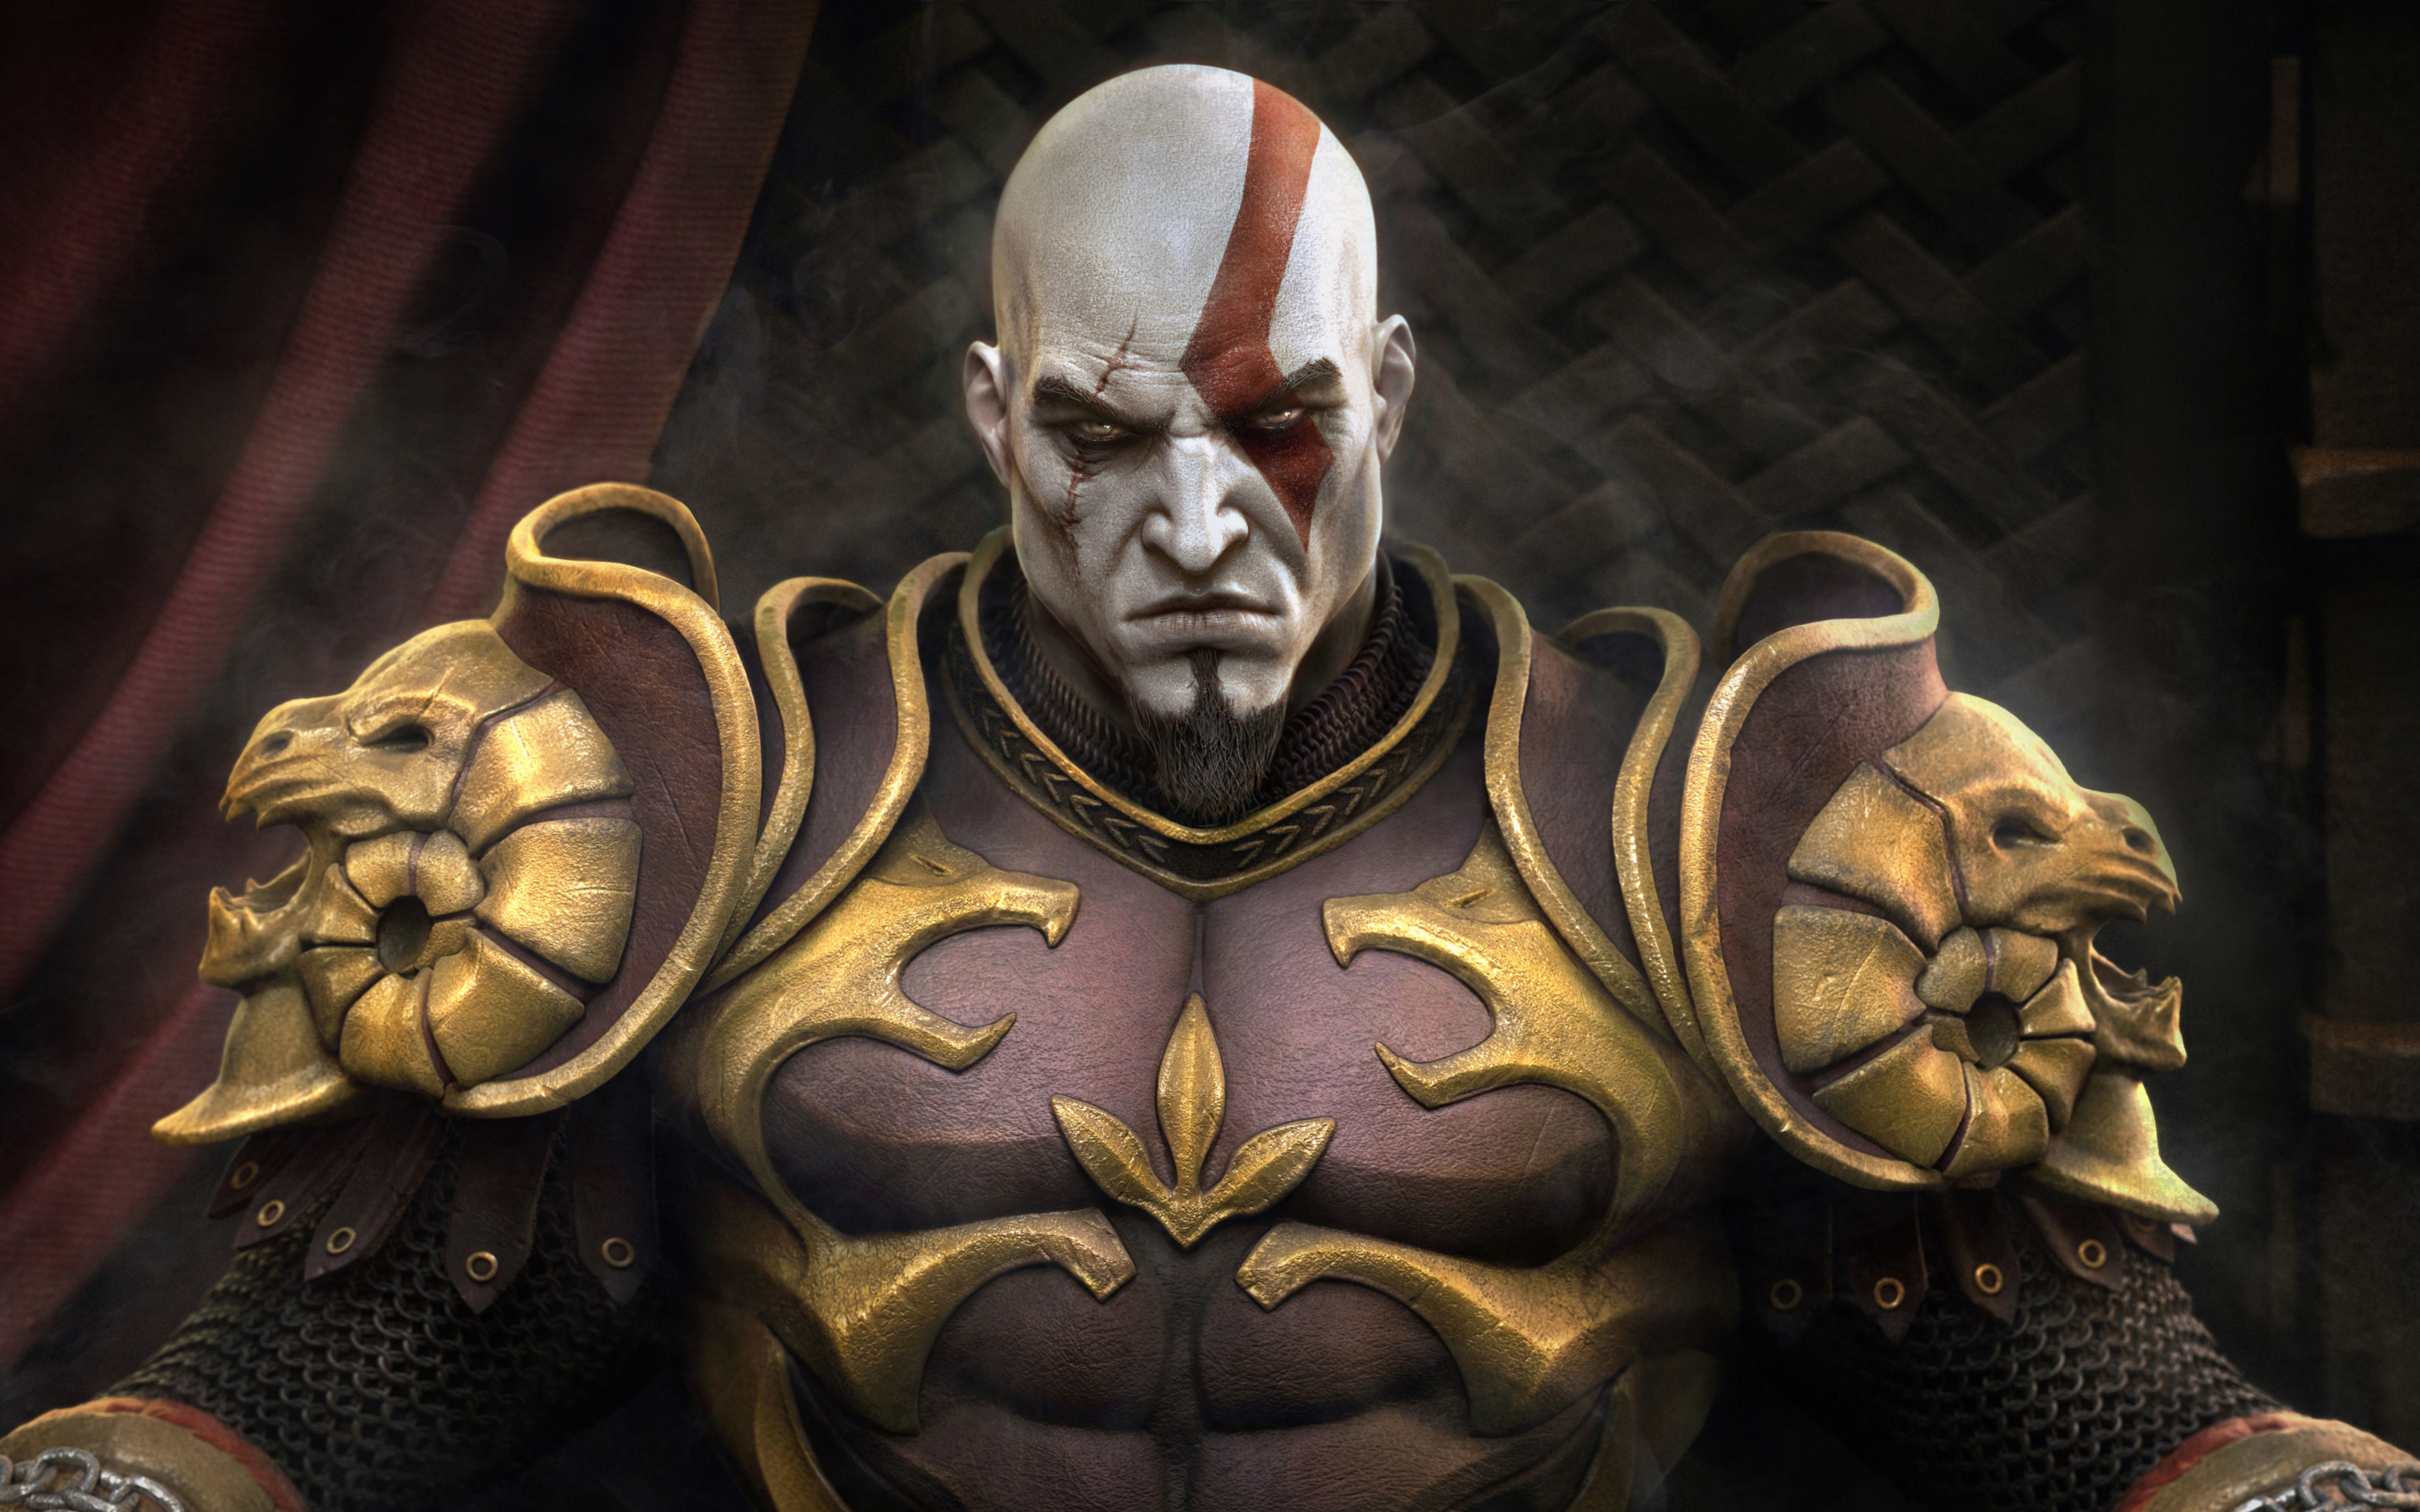 Hình nền ngai vàng của Kratos sẽ khiến bạn cảm thấy như đang ngồi trên ngai vàng đó thực sự. Tinh tế và đẹp mắt là những gì mà bạn sẽ cảm nhận được. Tải ngay hôm nay!